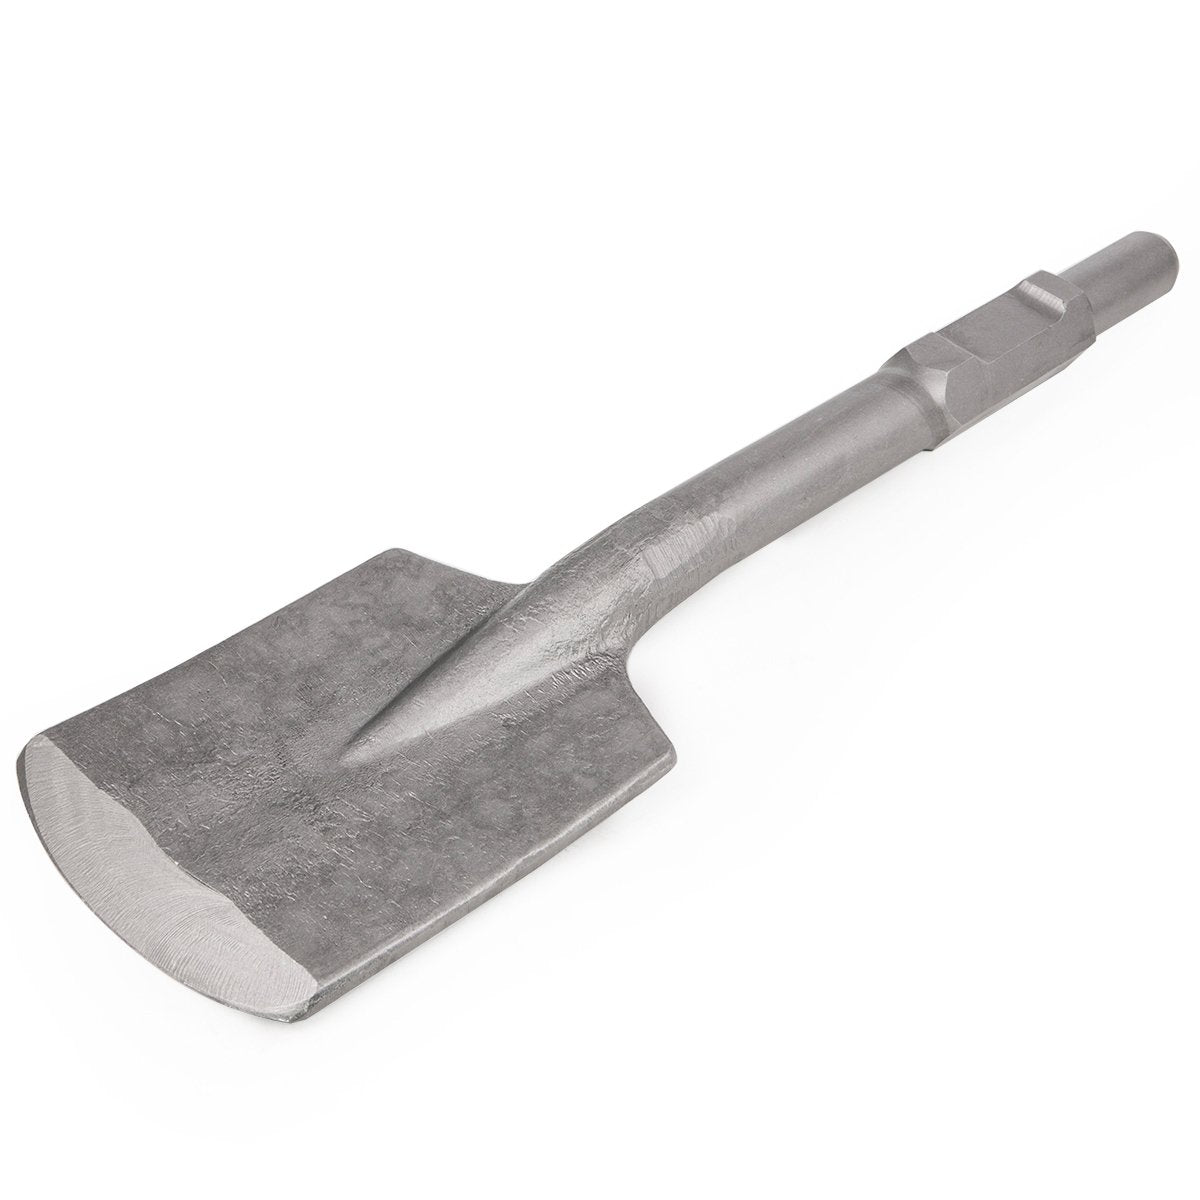 Square Clay Spade Asphalt Cutter Bit for Electric Demolition Jack Hammer 1-1/8" Hex shank